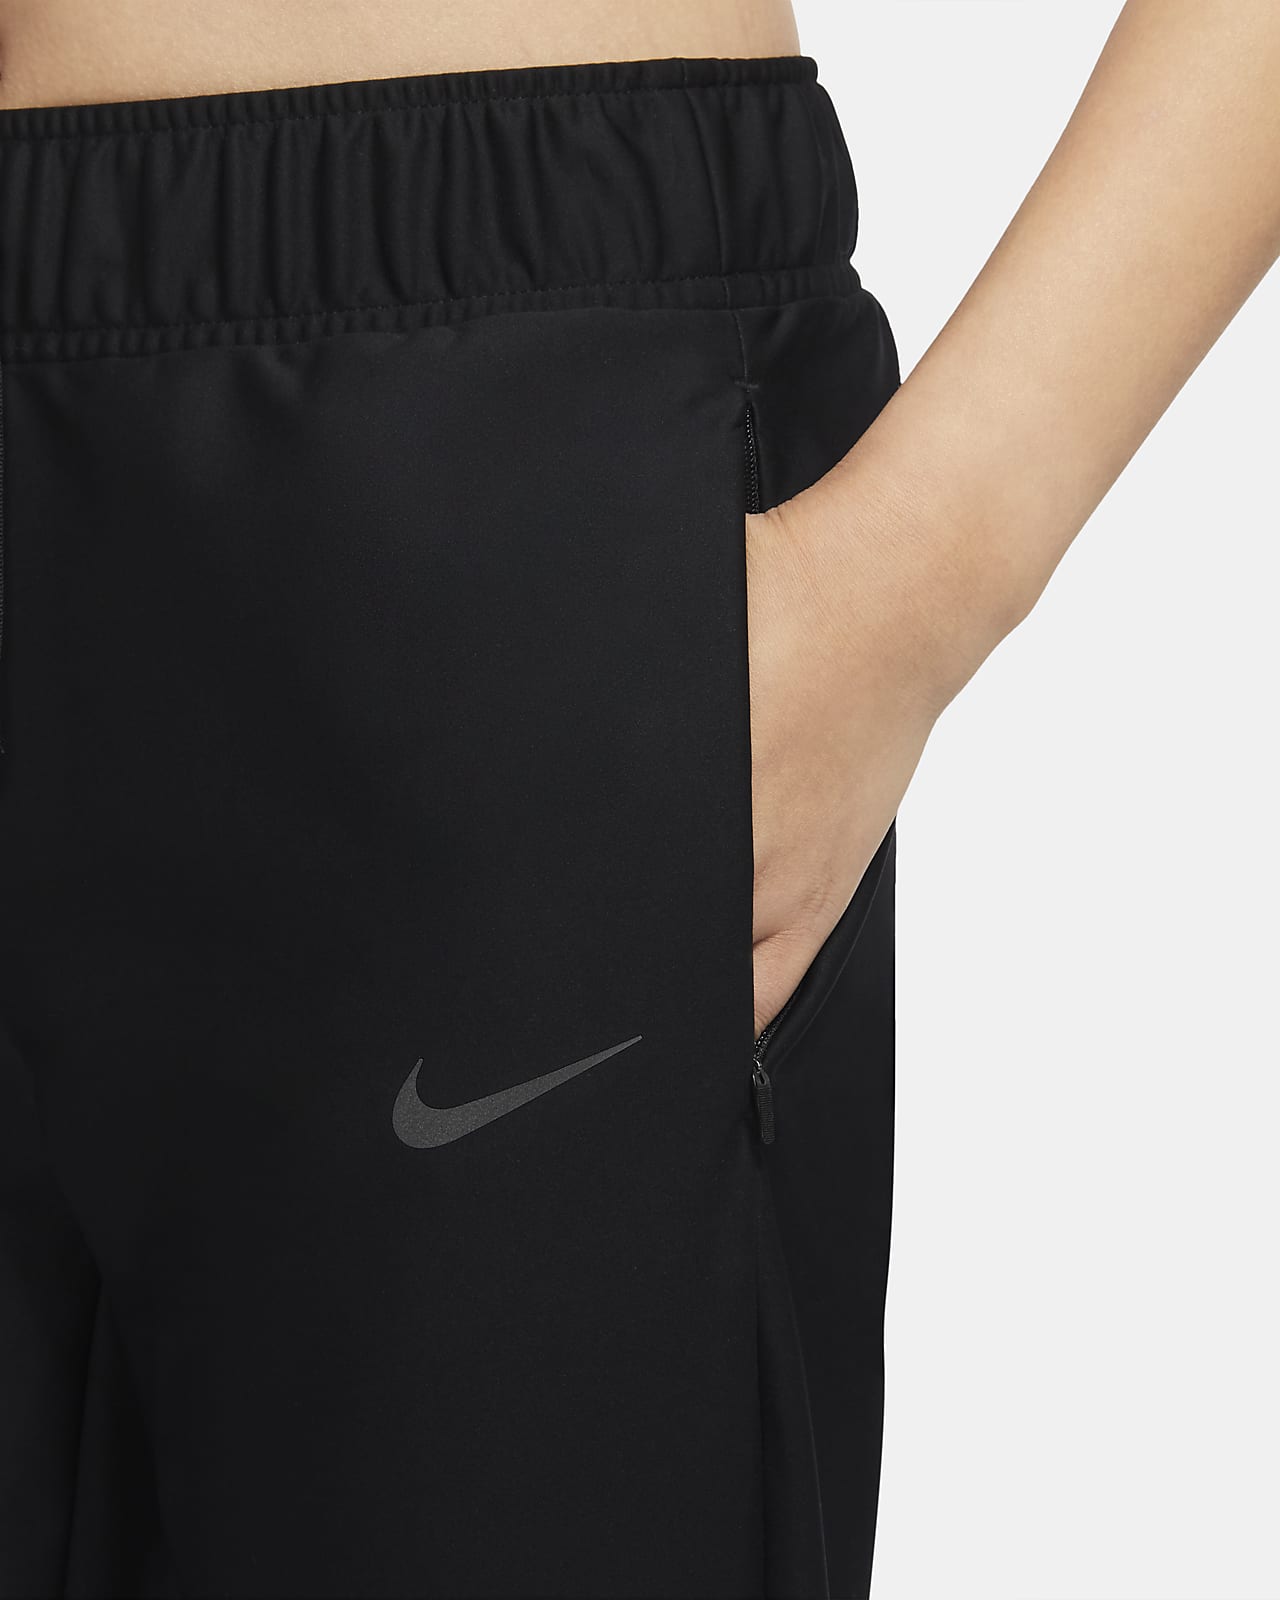 Nike公式 ナイキ シールド ラン ディビジョン ウィメンズ ランニングパンツ オンラインストア 通販サイト